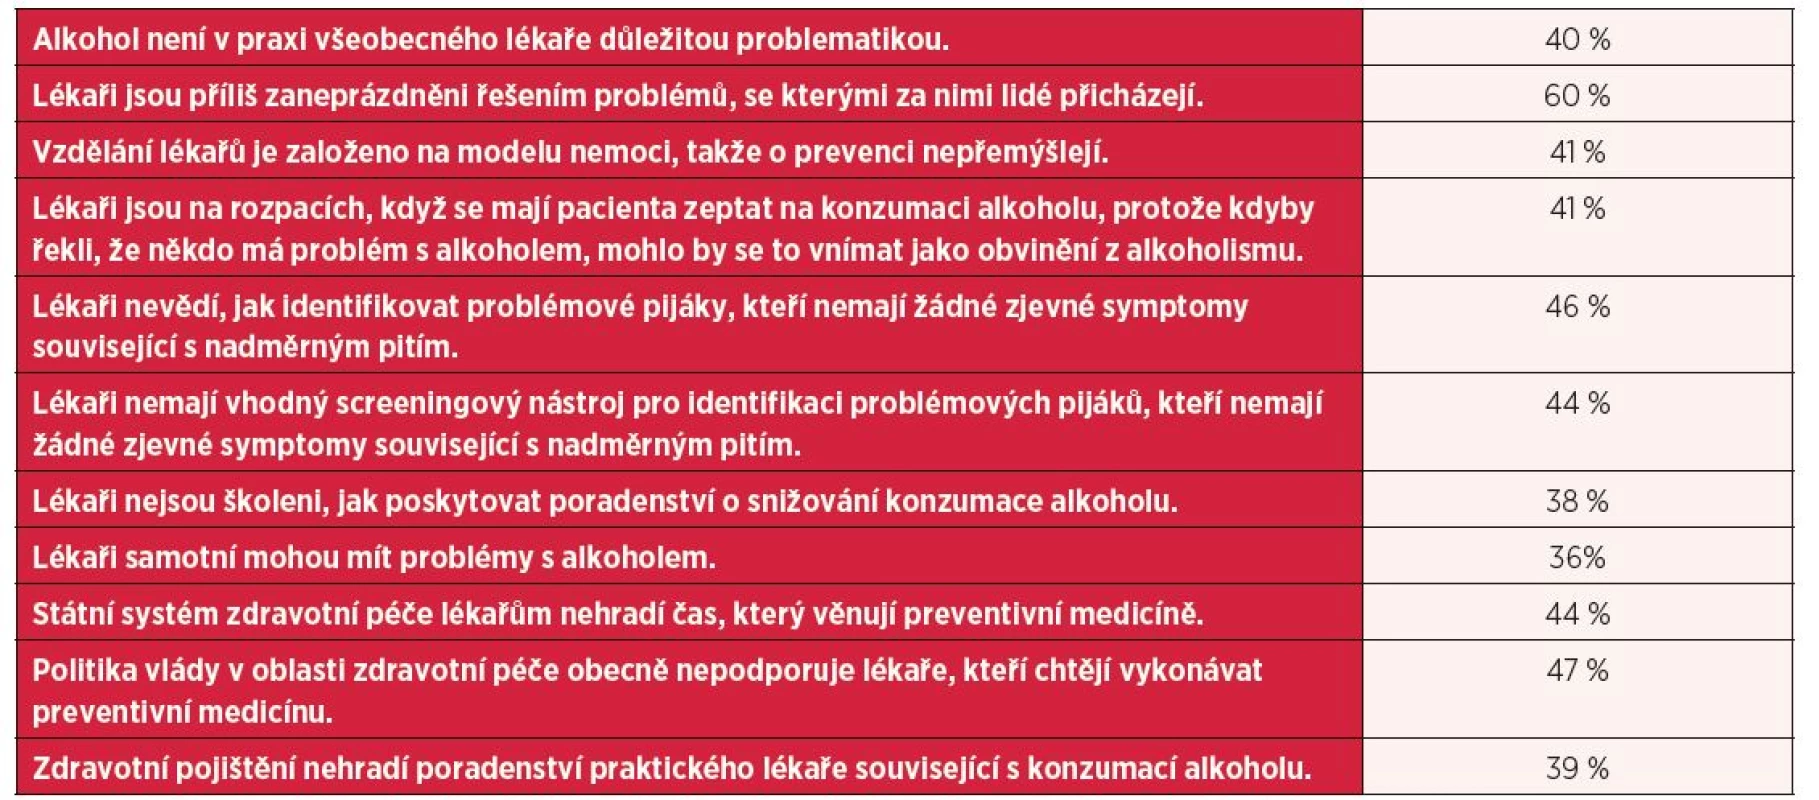 Názory lékařů na to, proč není problémům s alkoholem v primární zdravotní péči věnovaná dostatečná pozornost (procenta souhlasných odpovědí)